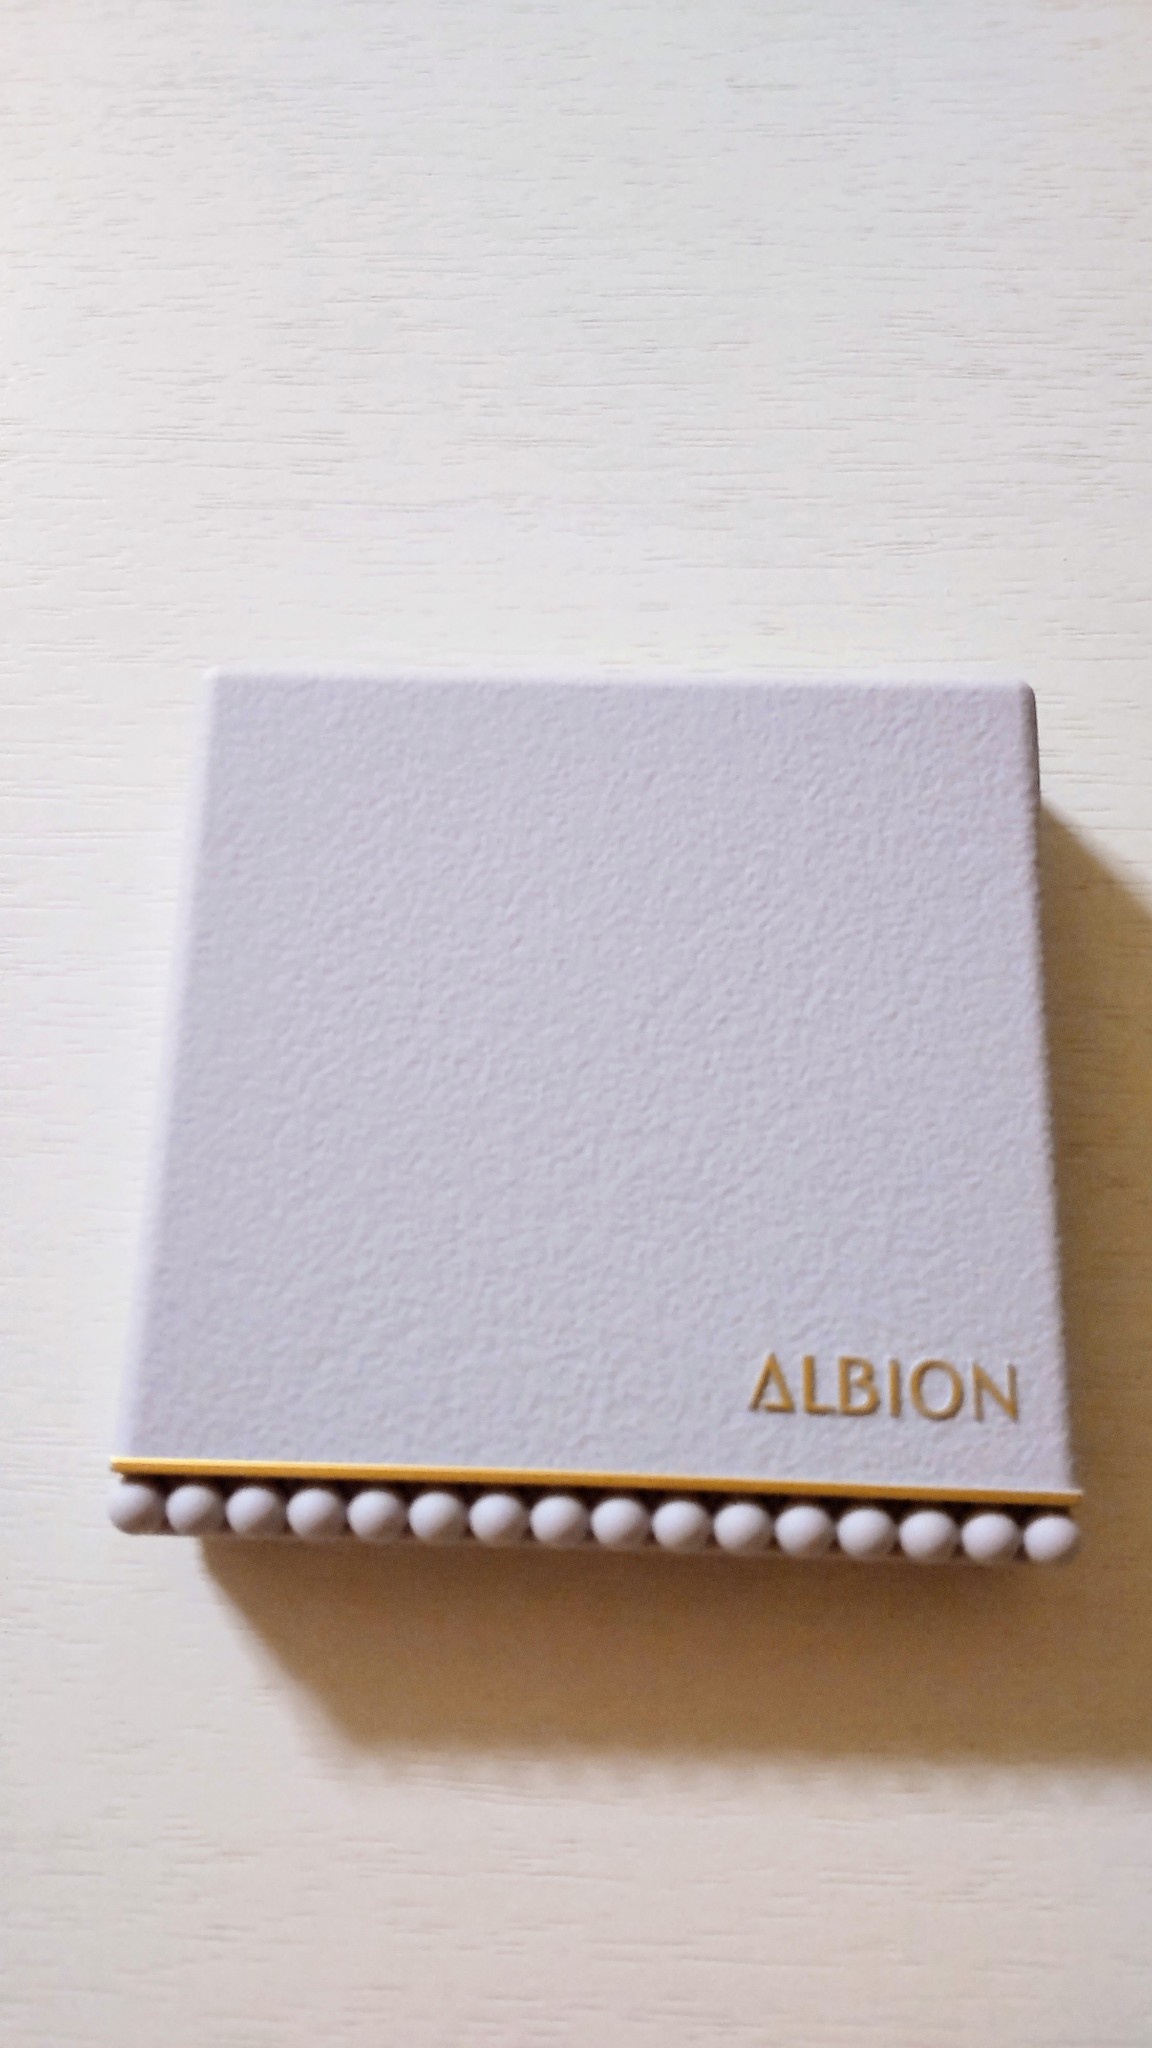 アルビオン / アルビオン スタジオ オパルセント オーラの公式商品情報